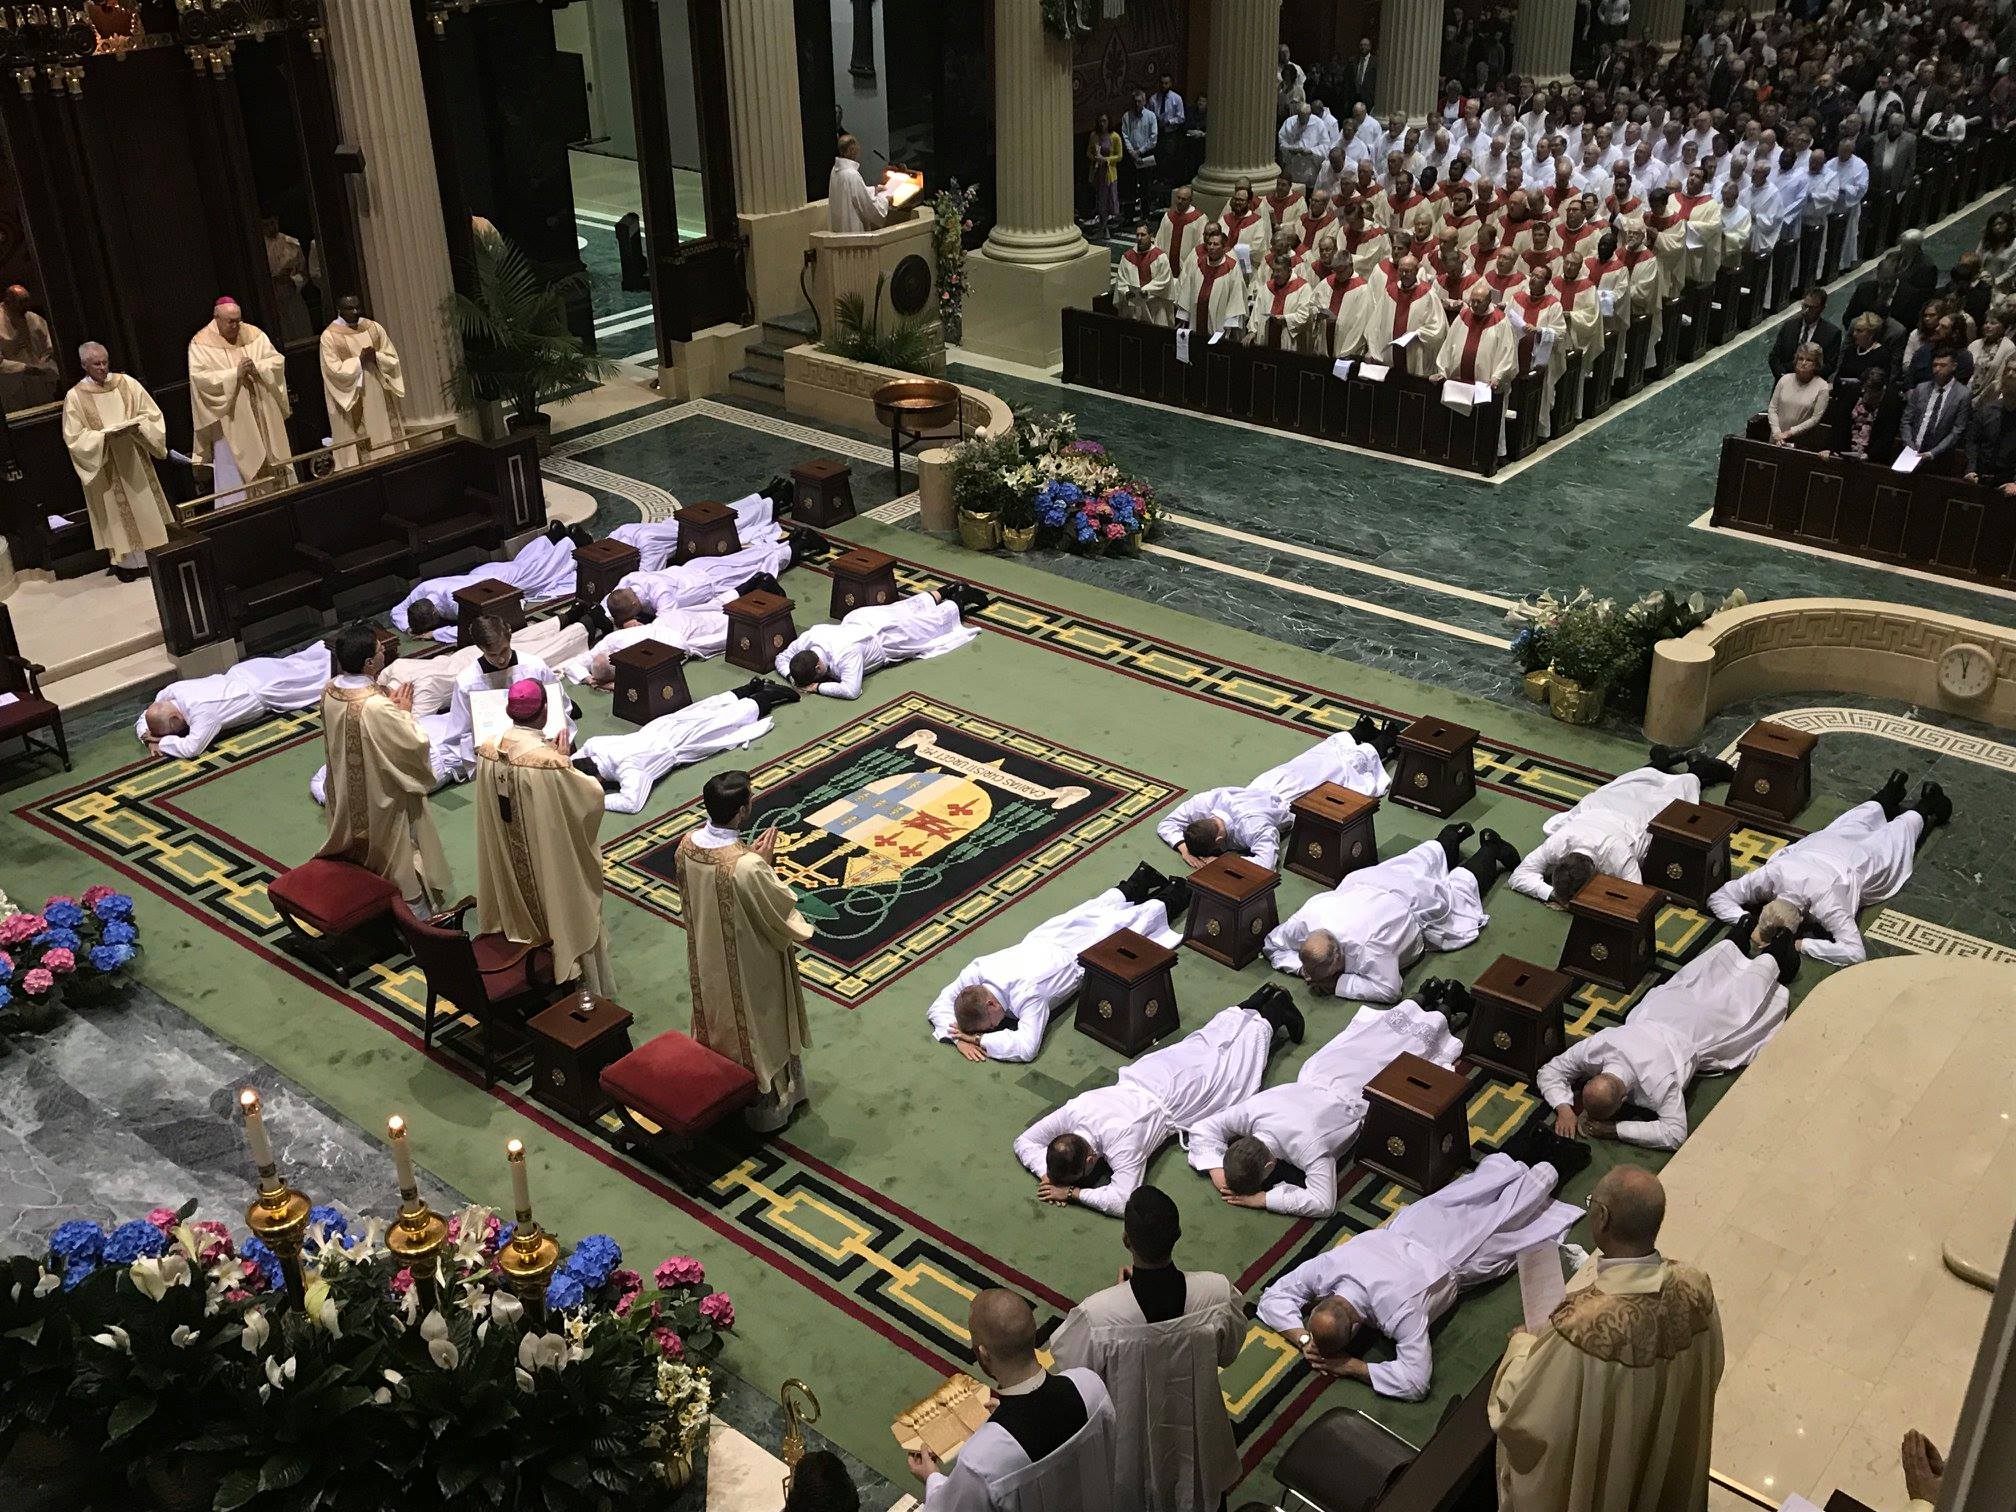 18 nuevos diáconos -3 camino al presbiterado- en la archidiócesis de Cincinati -EEUU-, varios de ellos latinoamericanos